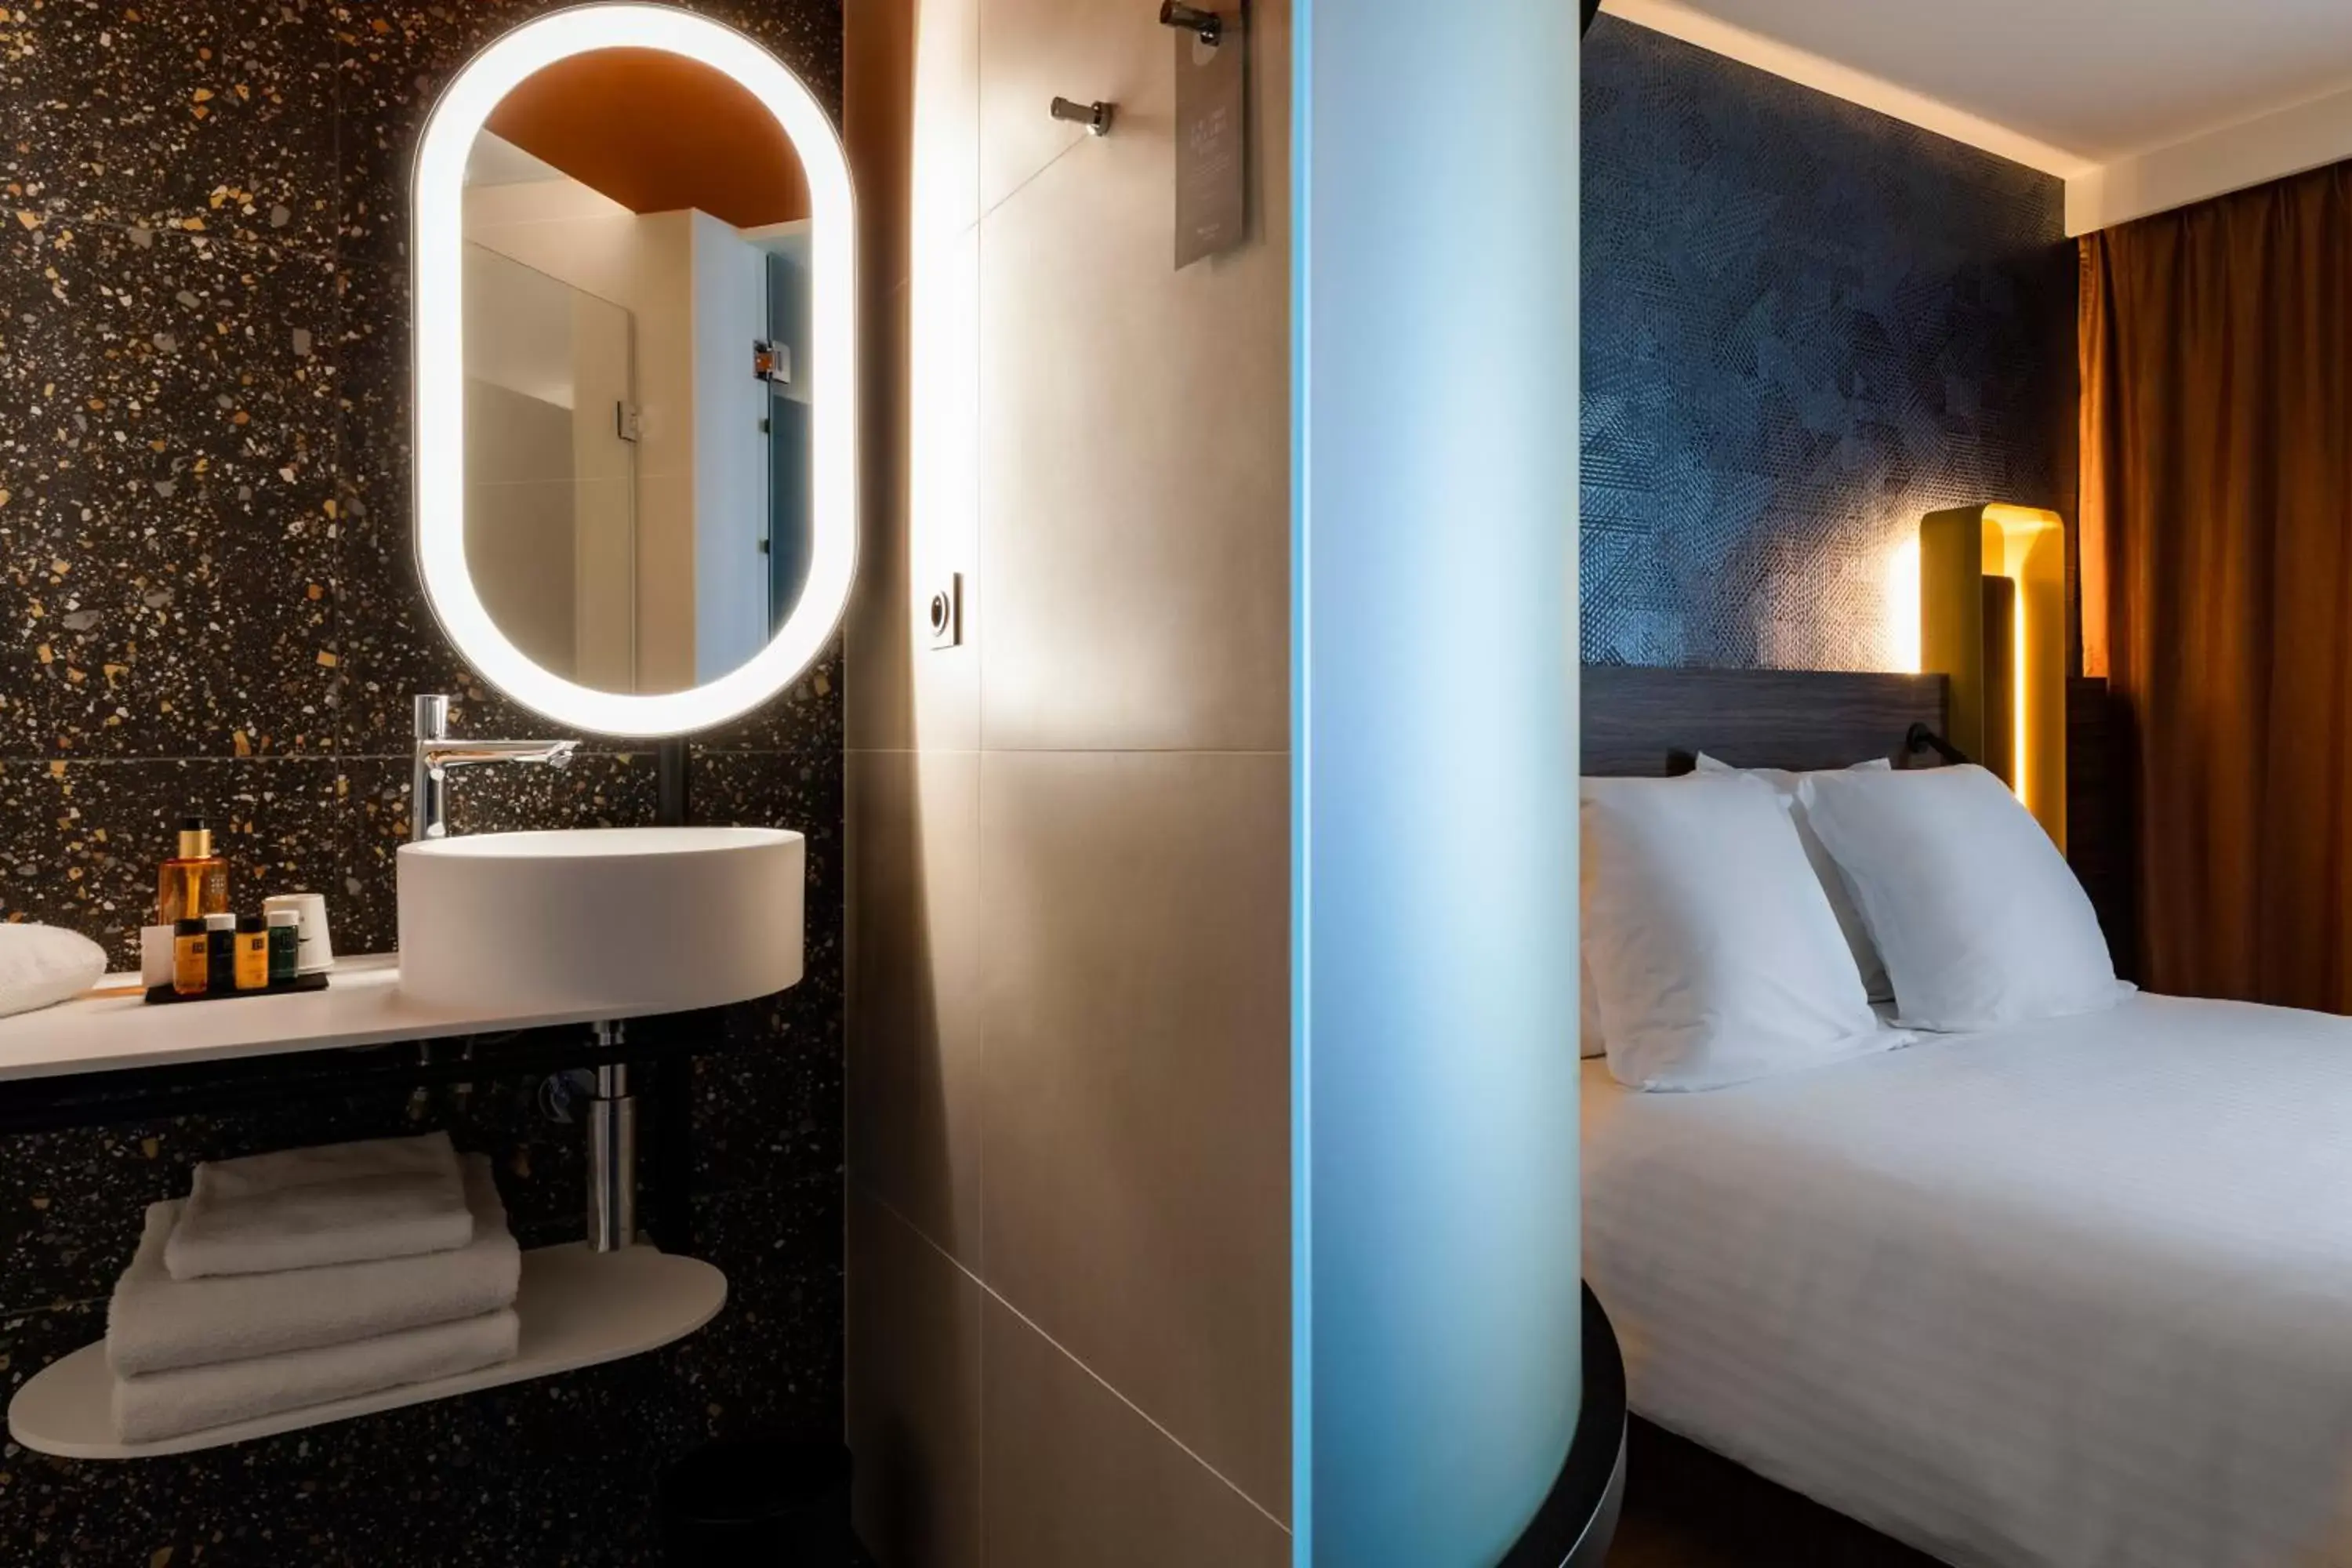 Bedroom, Bathroom in Oceania Le Conti